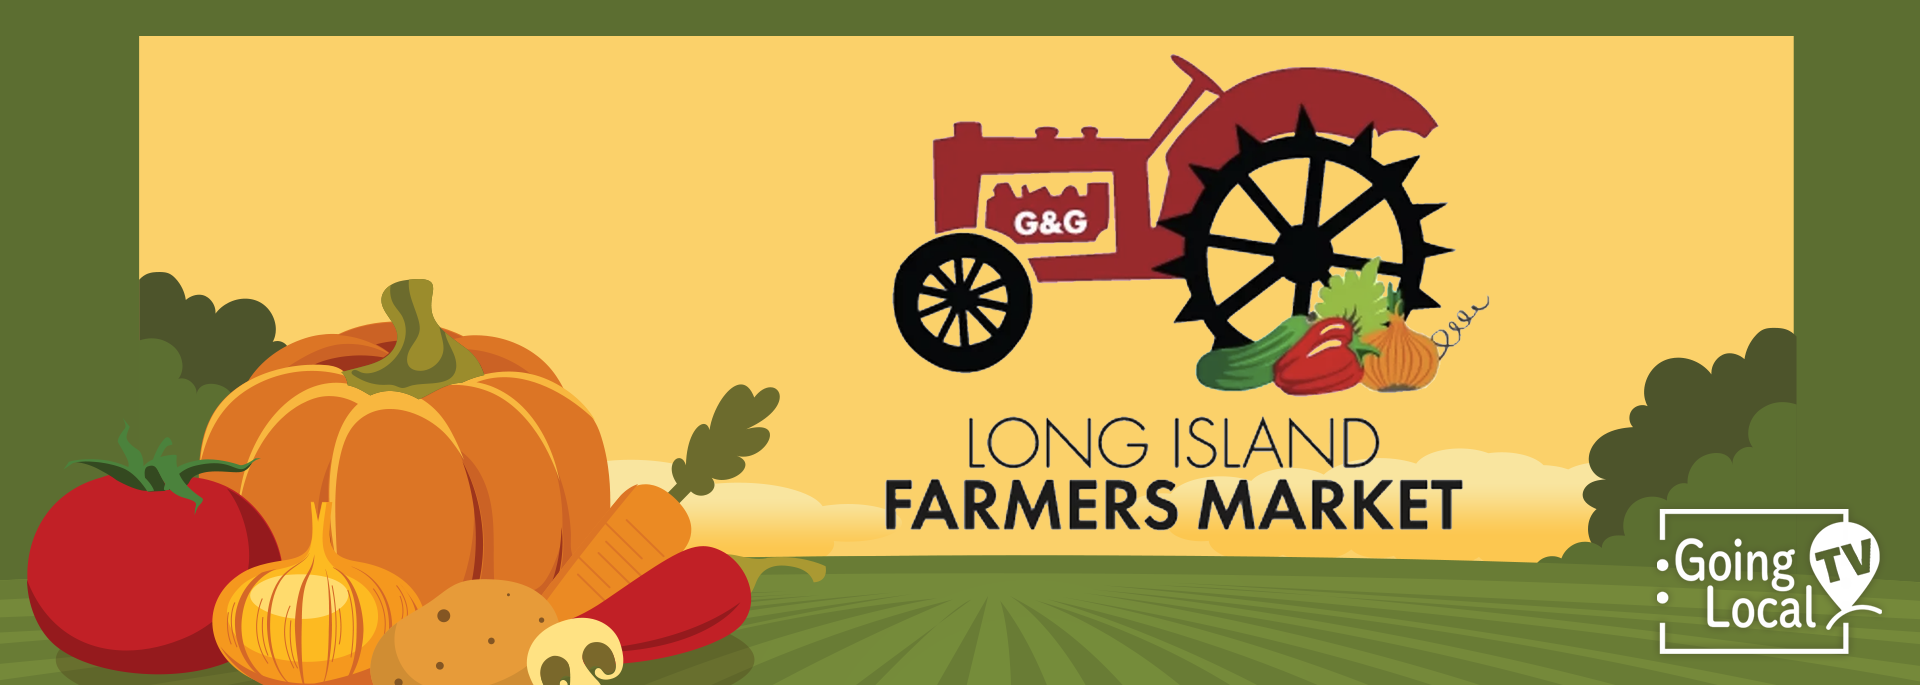 Long Island Farmers Market